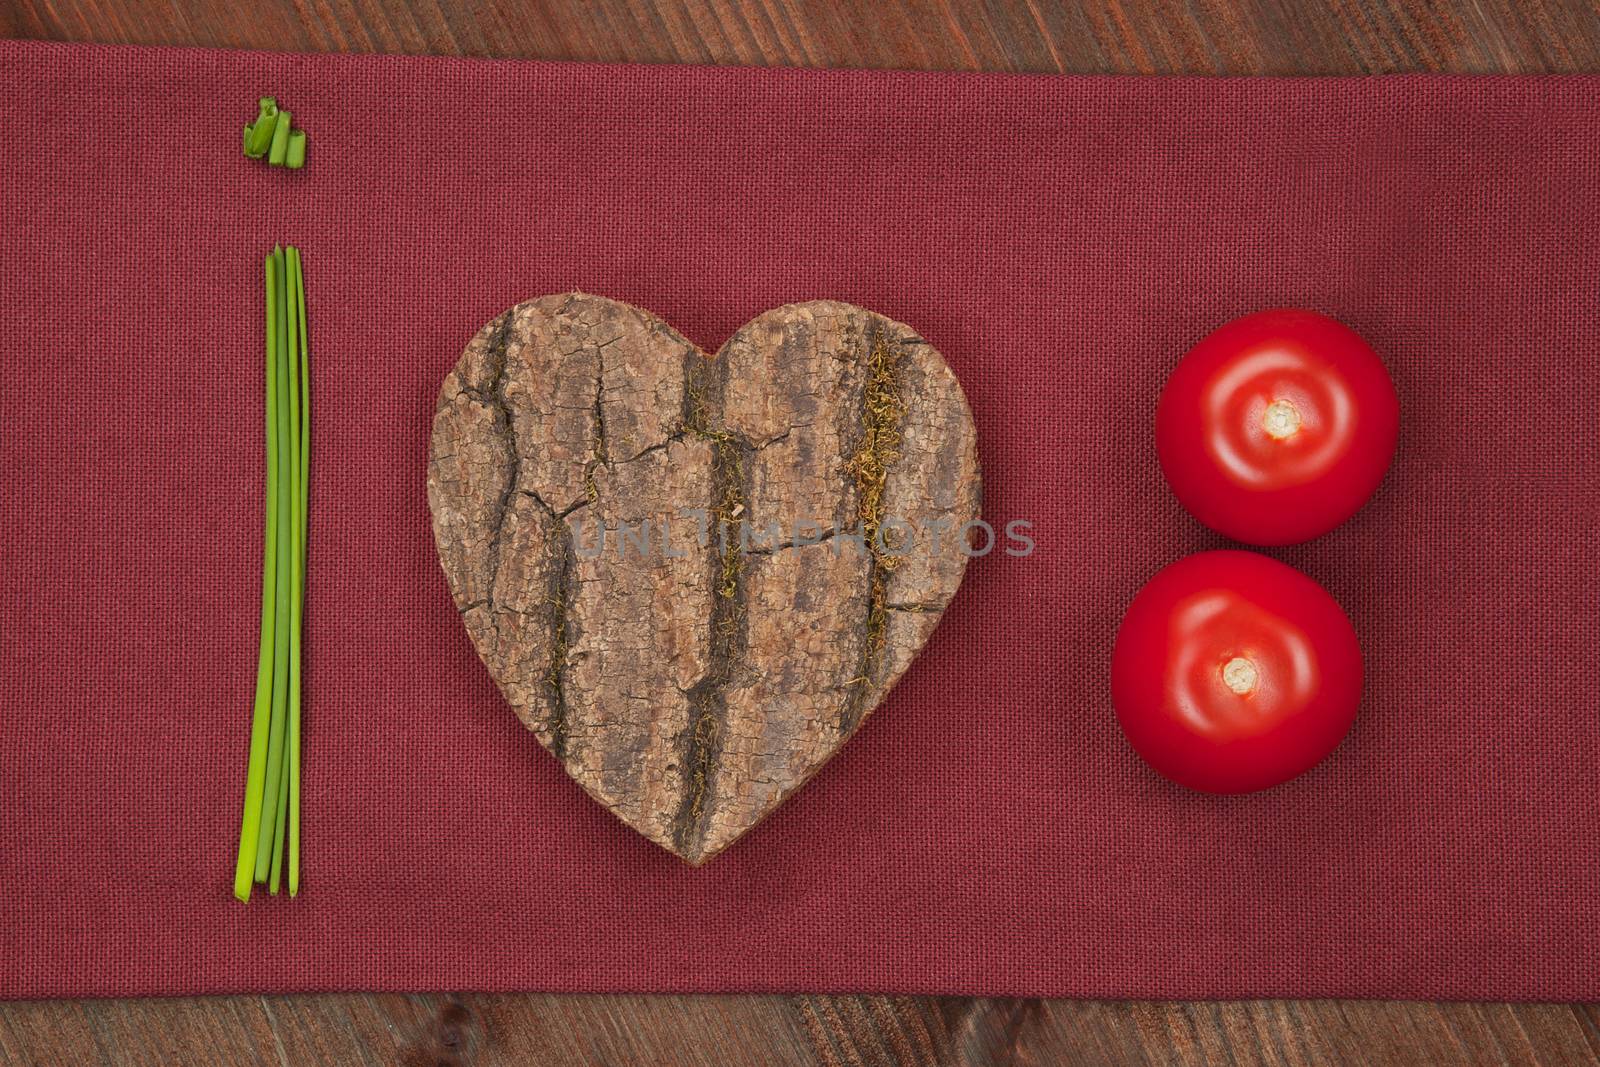 We love vegetable. by eskymaks